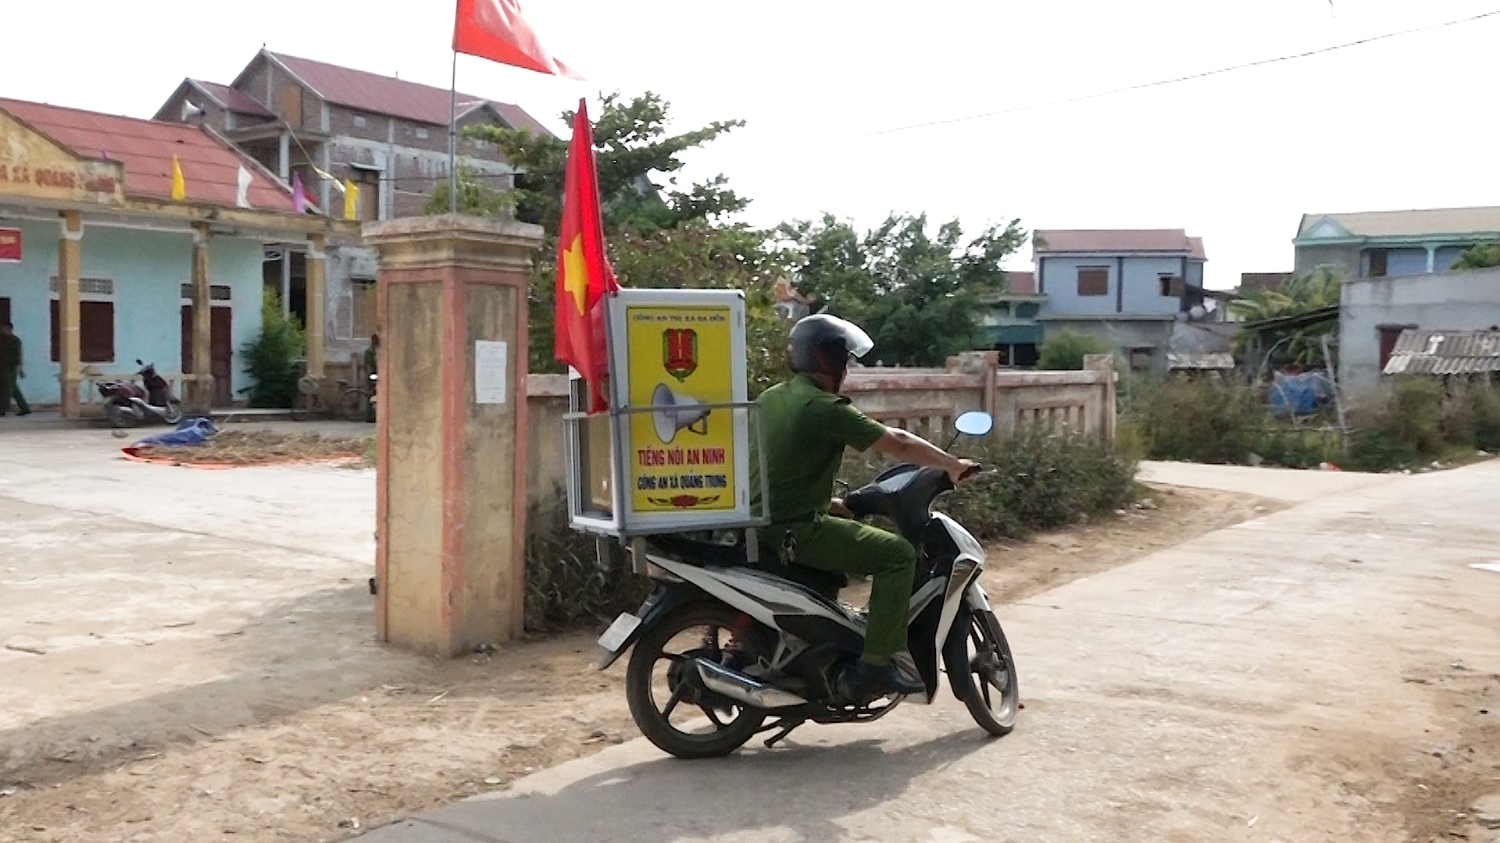 Cứ khoảng 17h hàng ngày, công an xã Quảng Trung lại chạy xe máy chở theo loa để thông báo về tình hình an ninh trật tự, nhắc nhở người dân cảnh giác với tình tội phạm, cướp giật tài sản